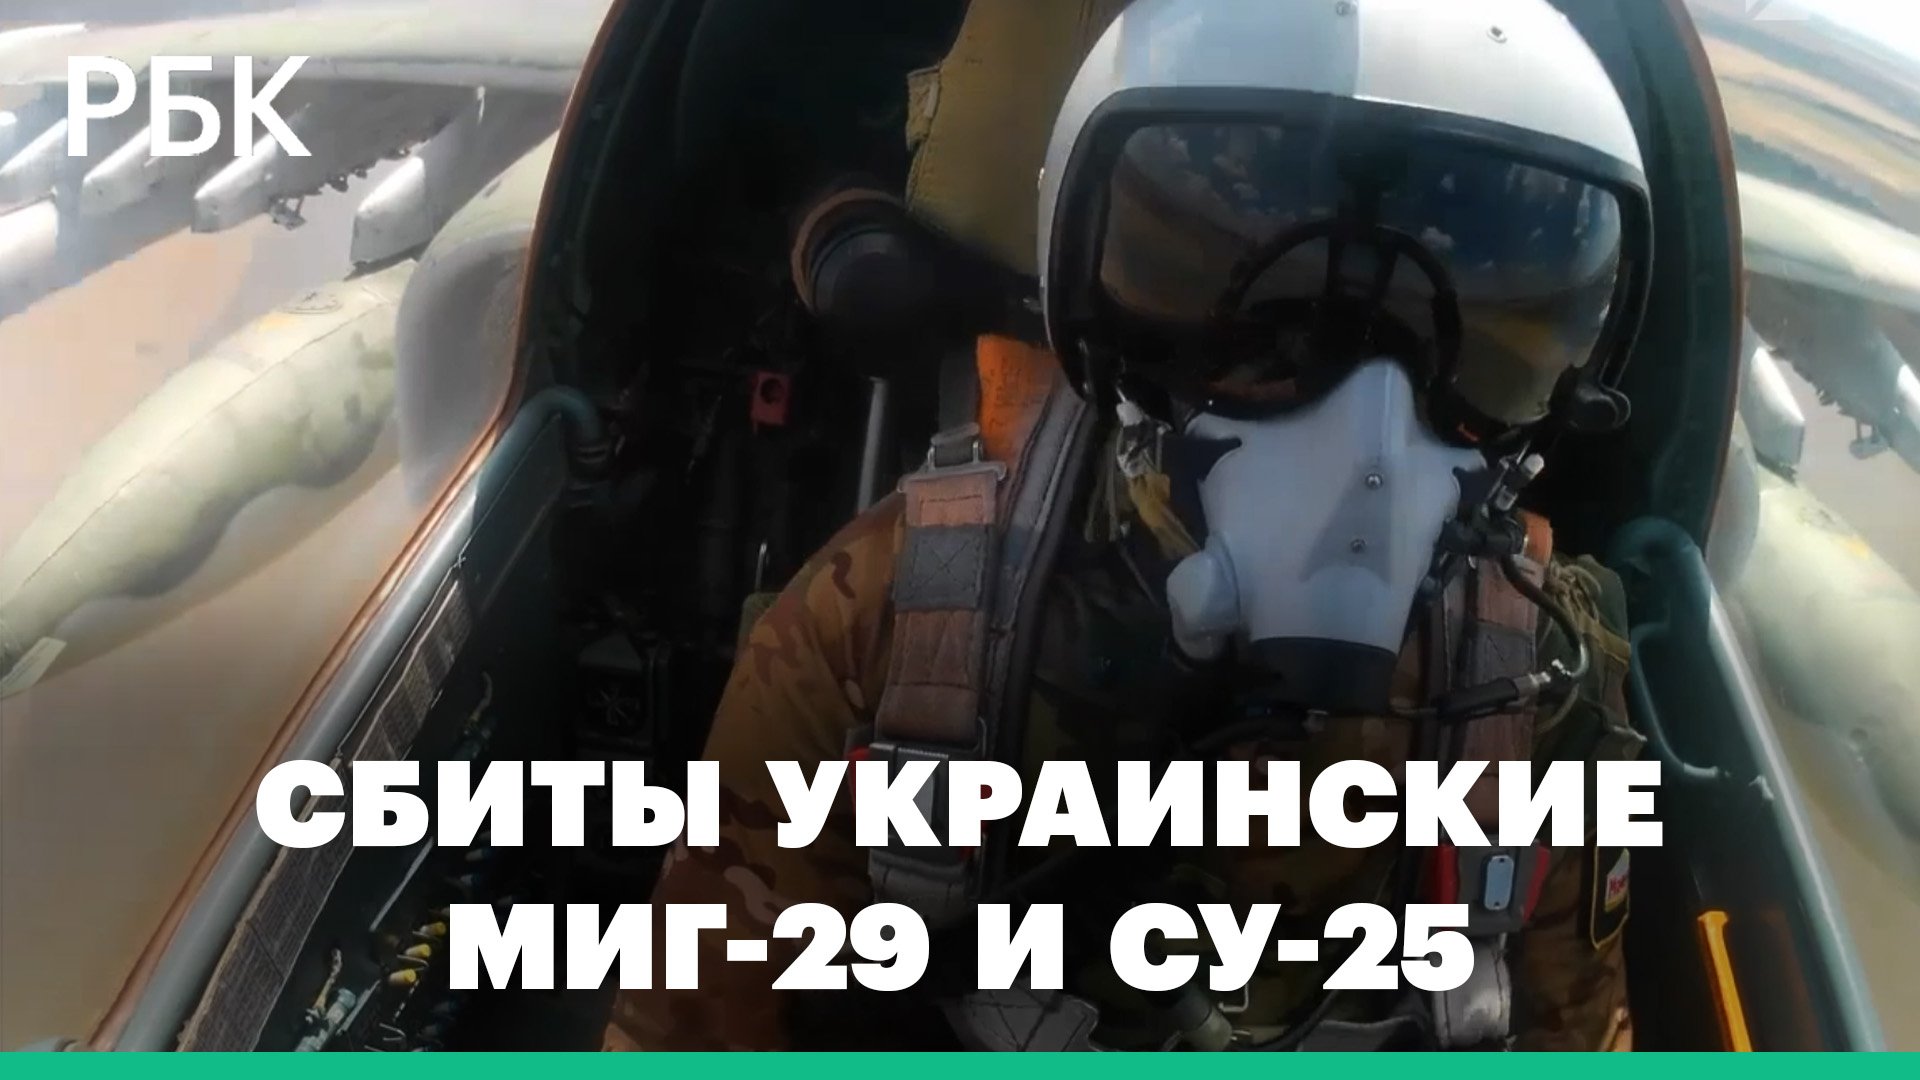 Сбитые украинские МиГ-29 и Су-25 и уничтоженные пункты управления ВСУ, — минобороны о спецоперации